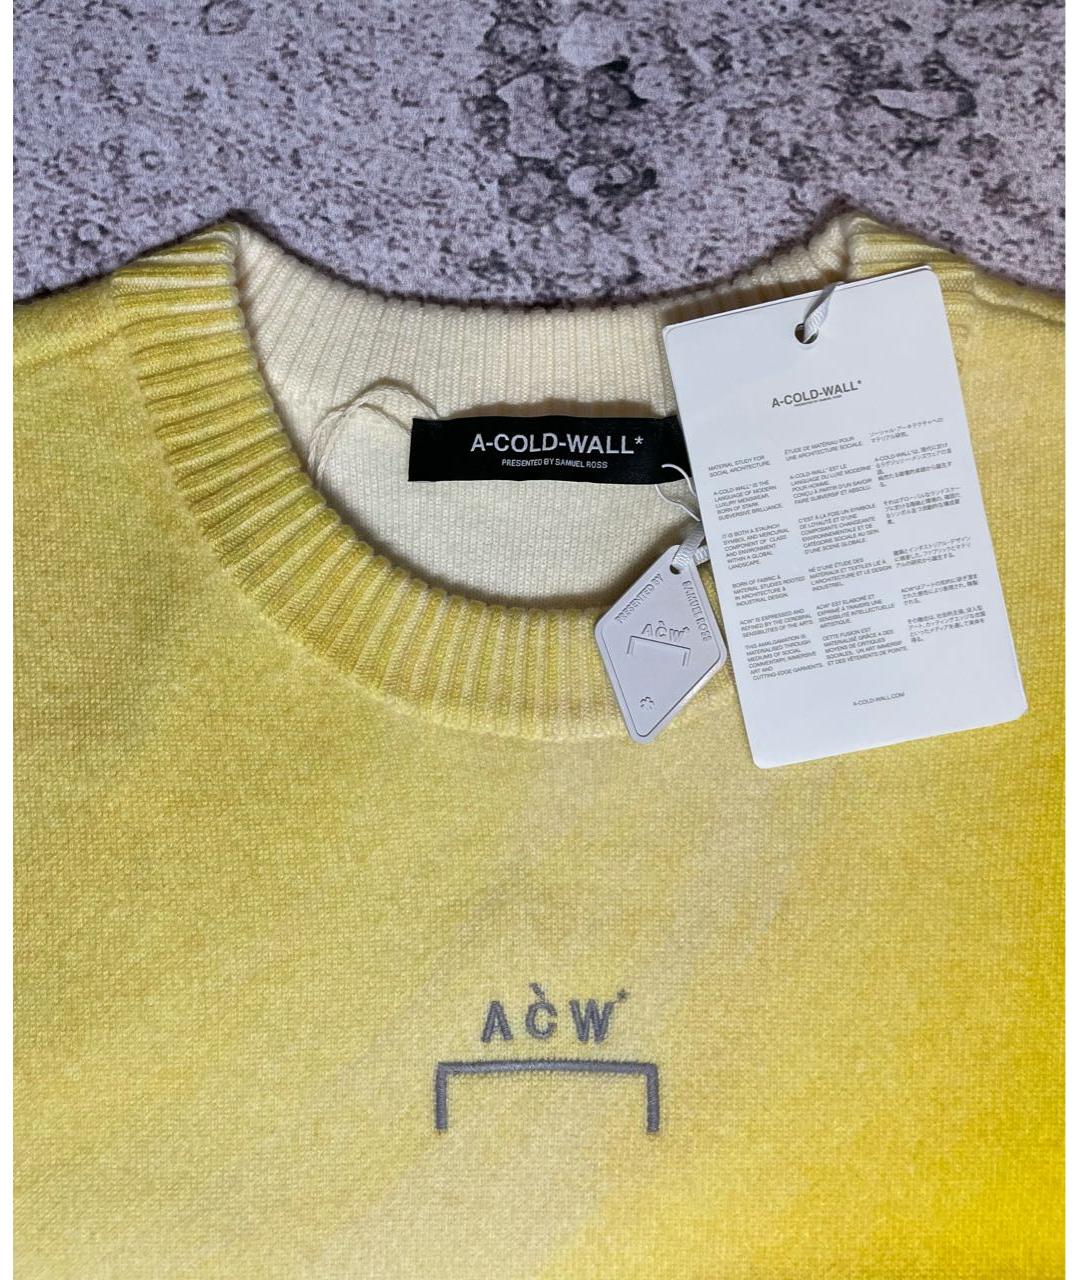 A-COLD-WALL* Желтый шерстяной джемпер / свитер, фото 6